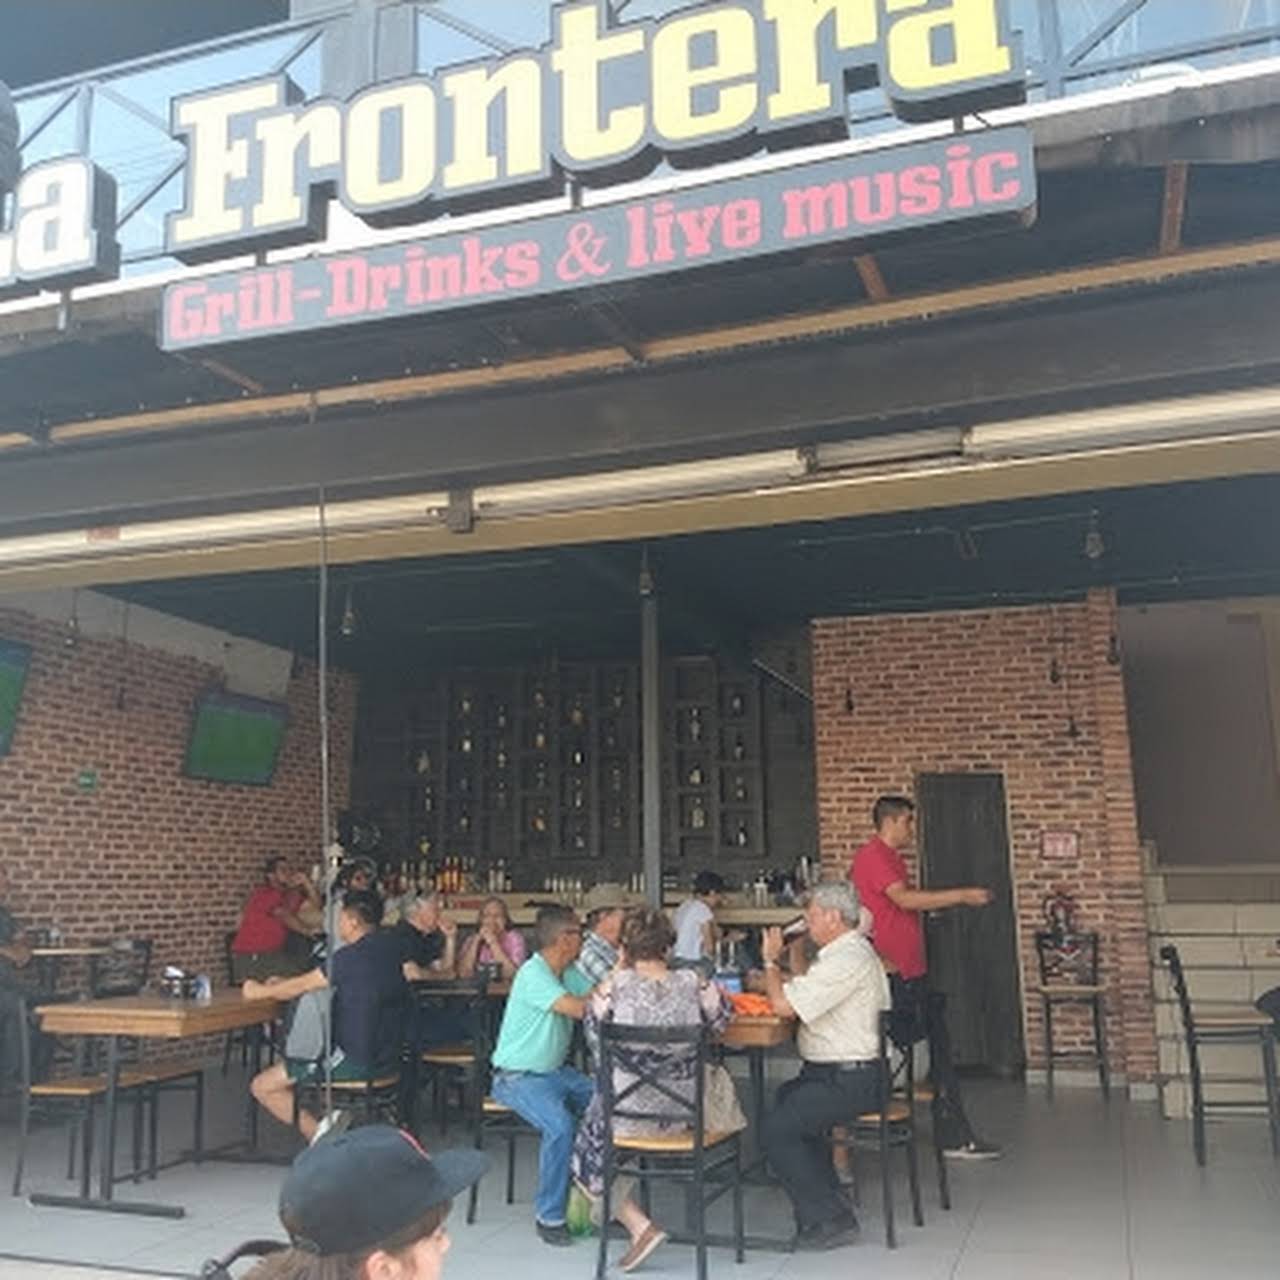 La Frontera: Grill-Drinks & Live Music - Live Music Bar en Centro